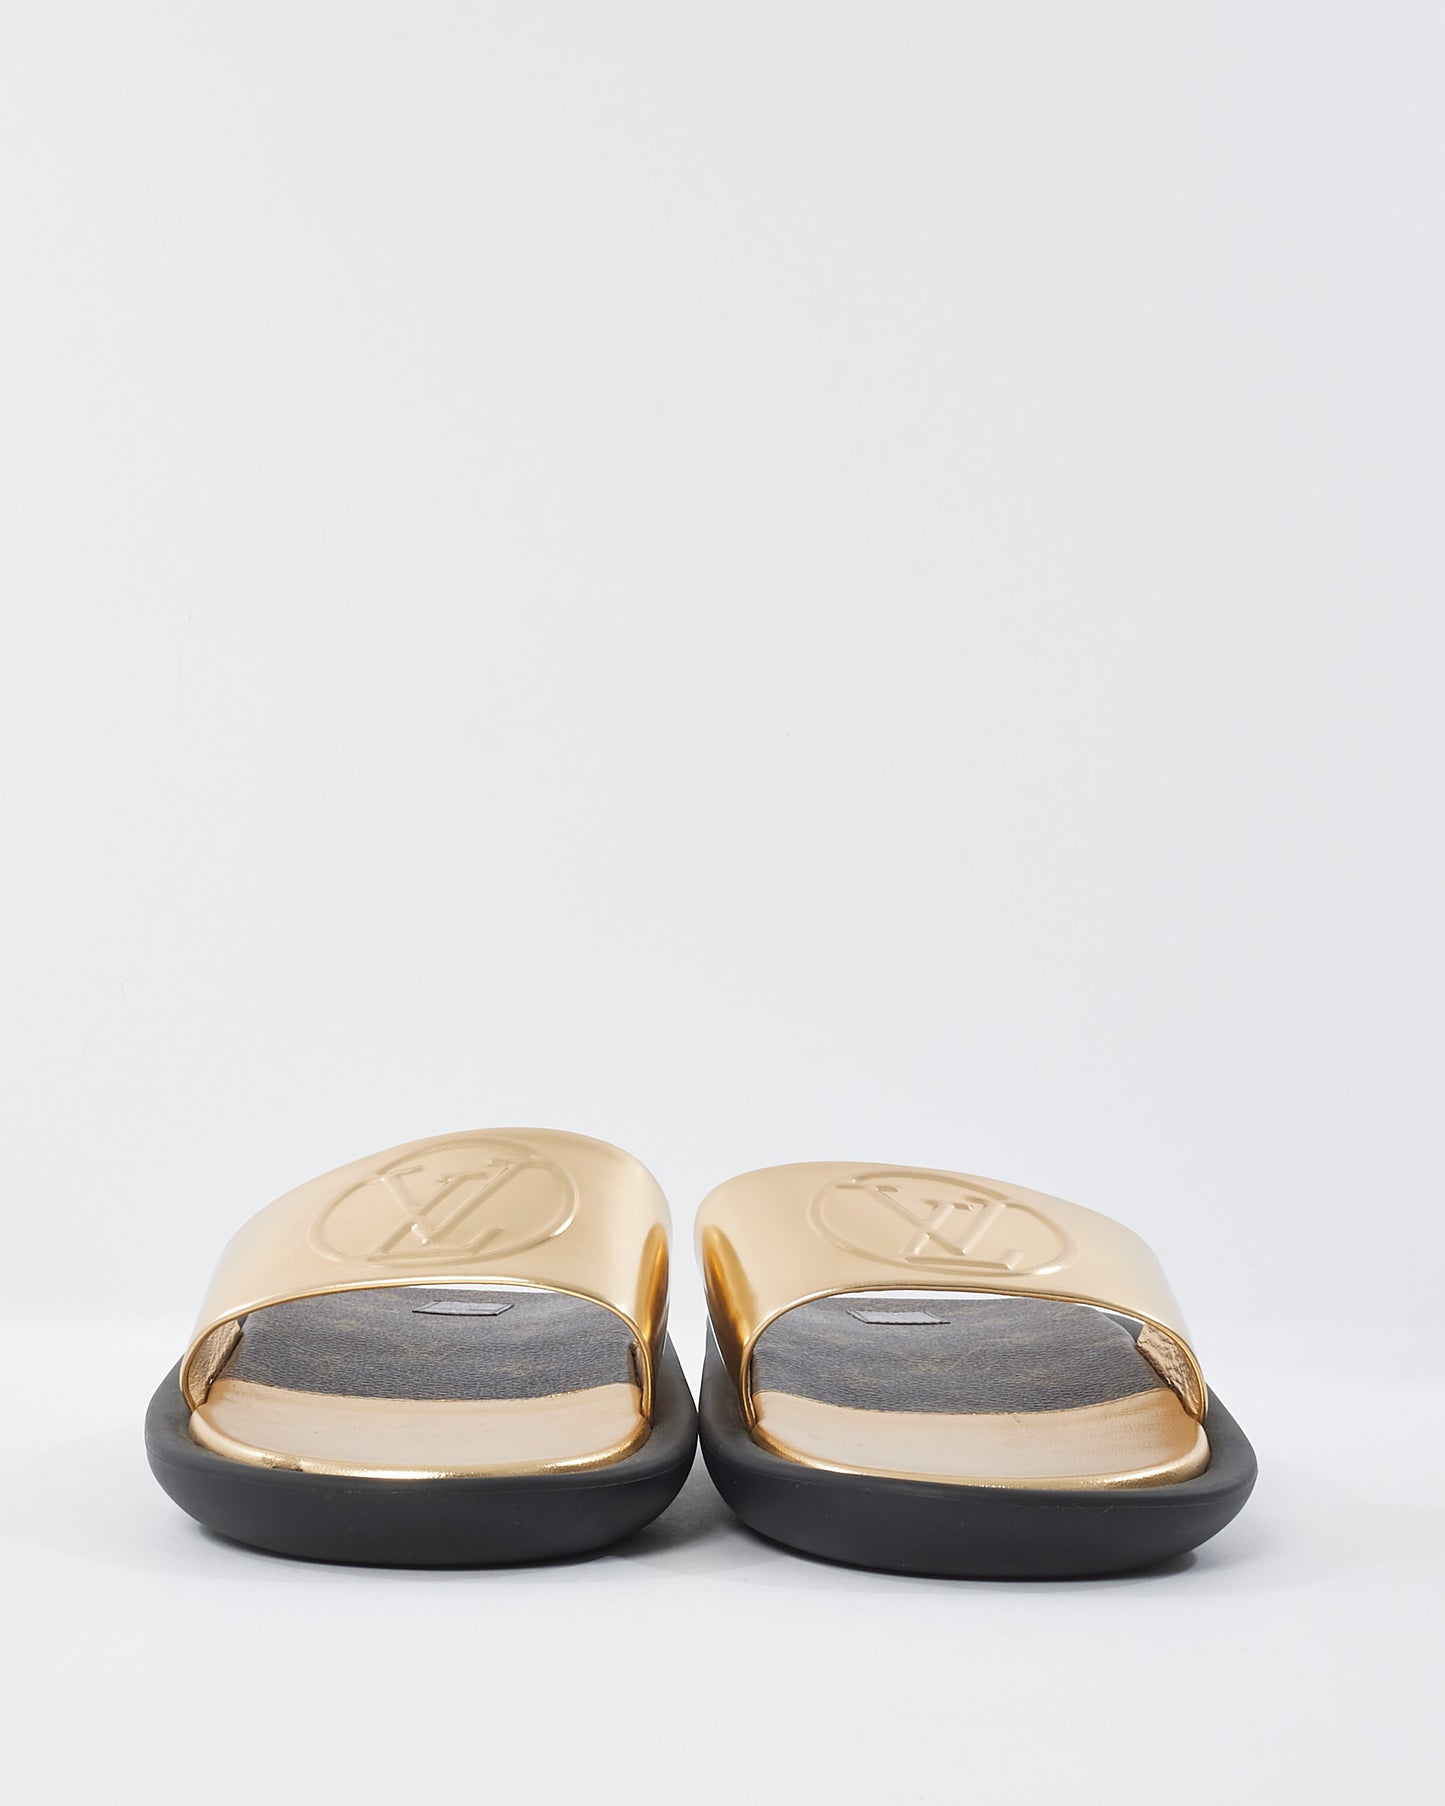 Louis Vuitton Monogram & Gold Mule Slides - 41